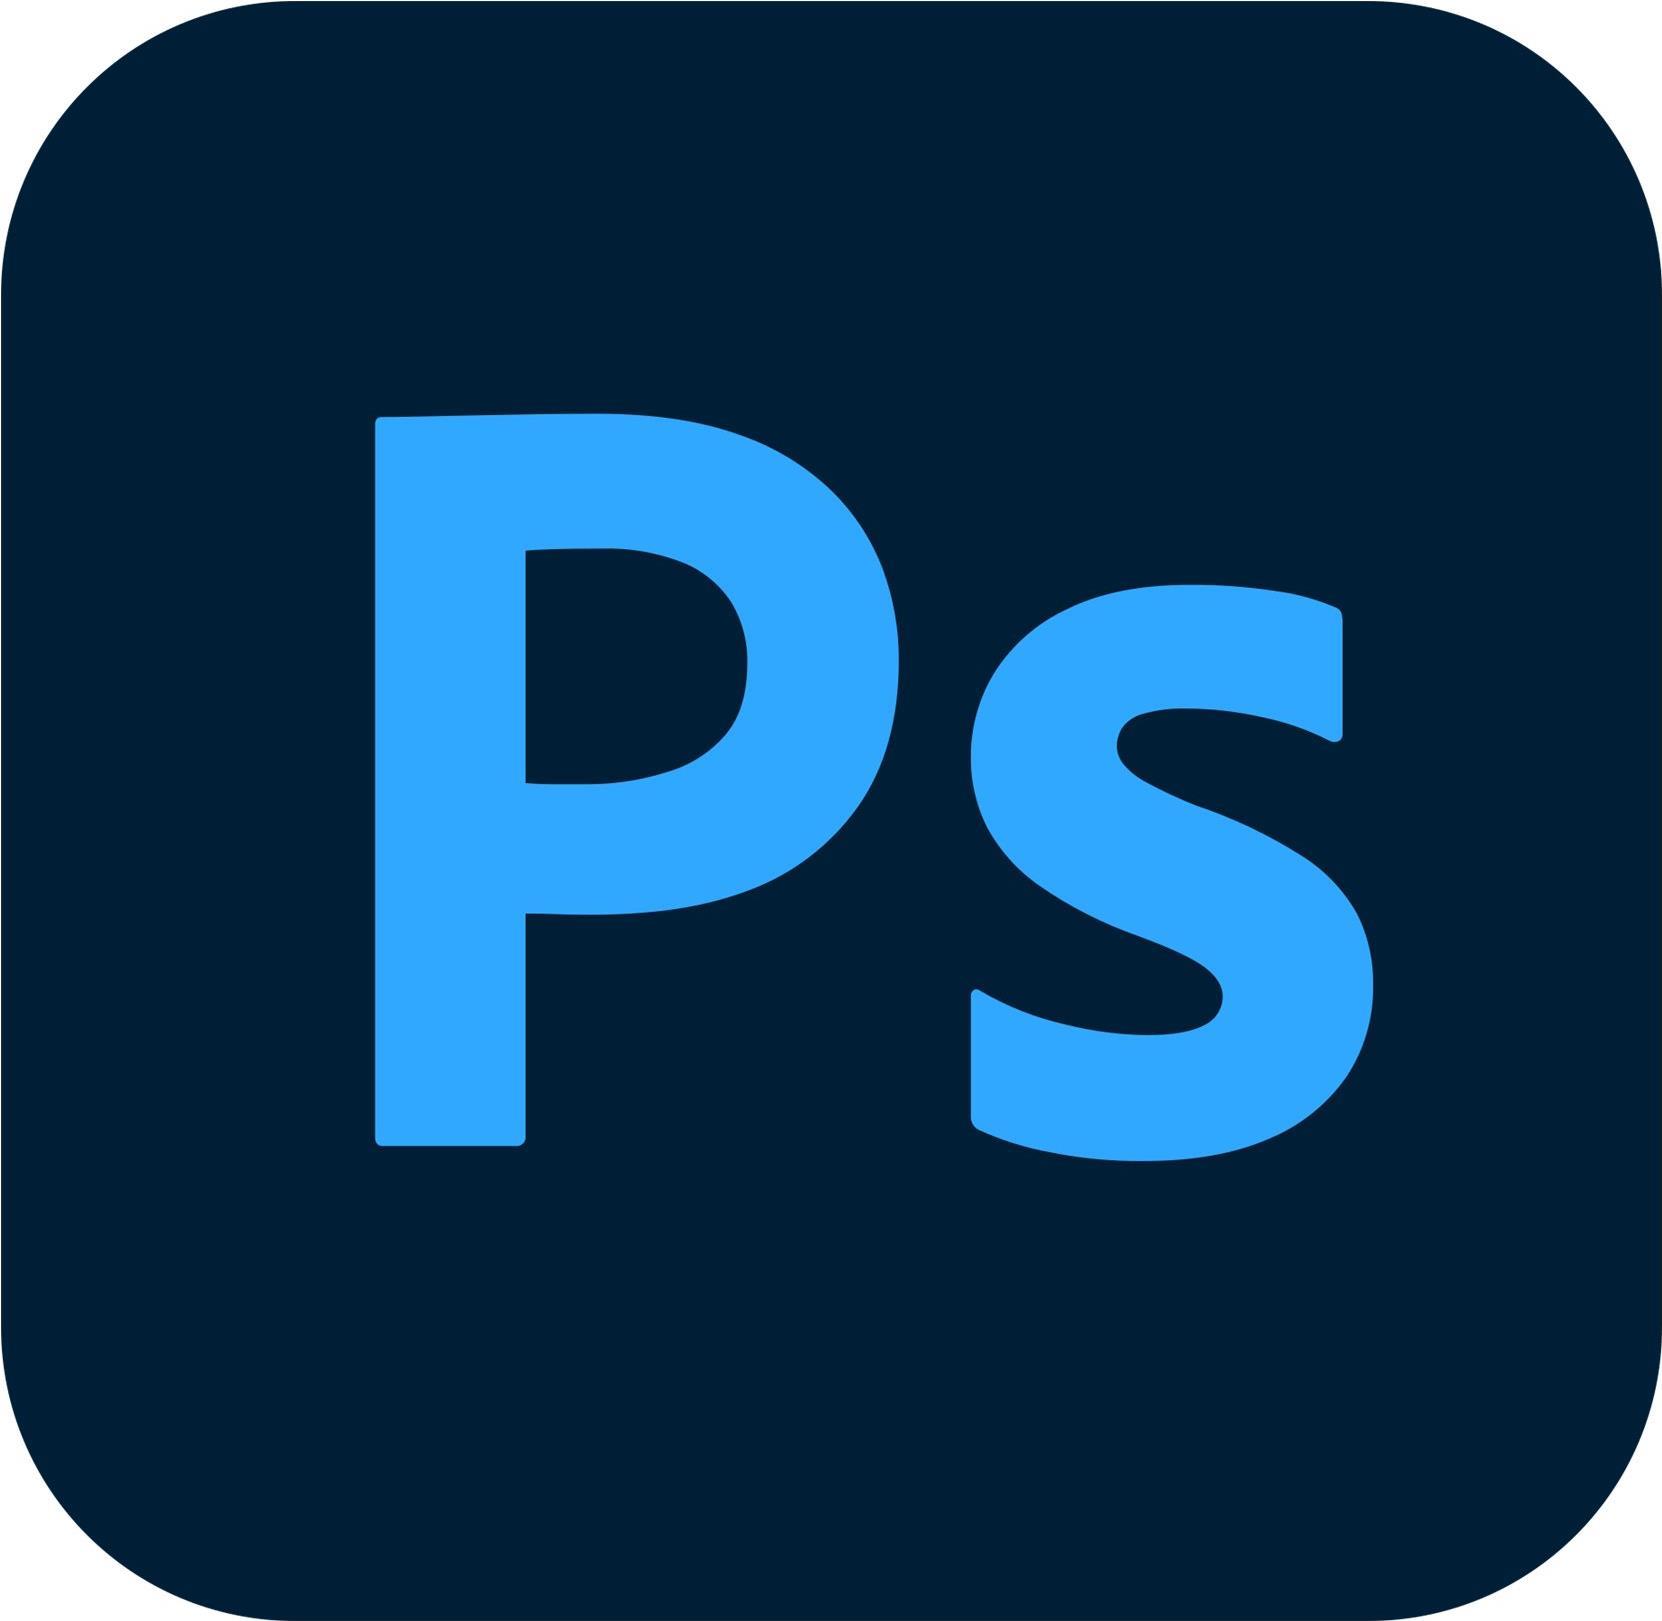 Adobe Photoshop CC for Enterprise (65297900BA03B12)